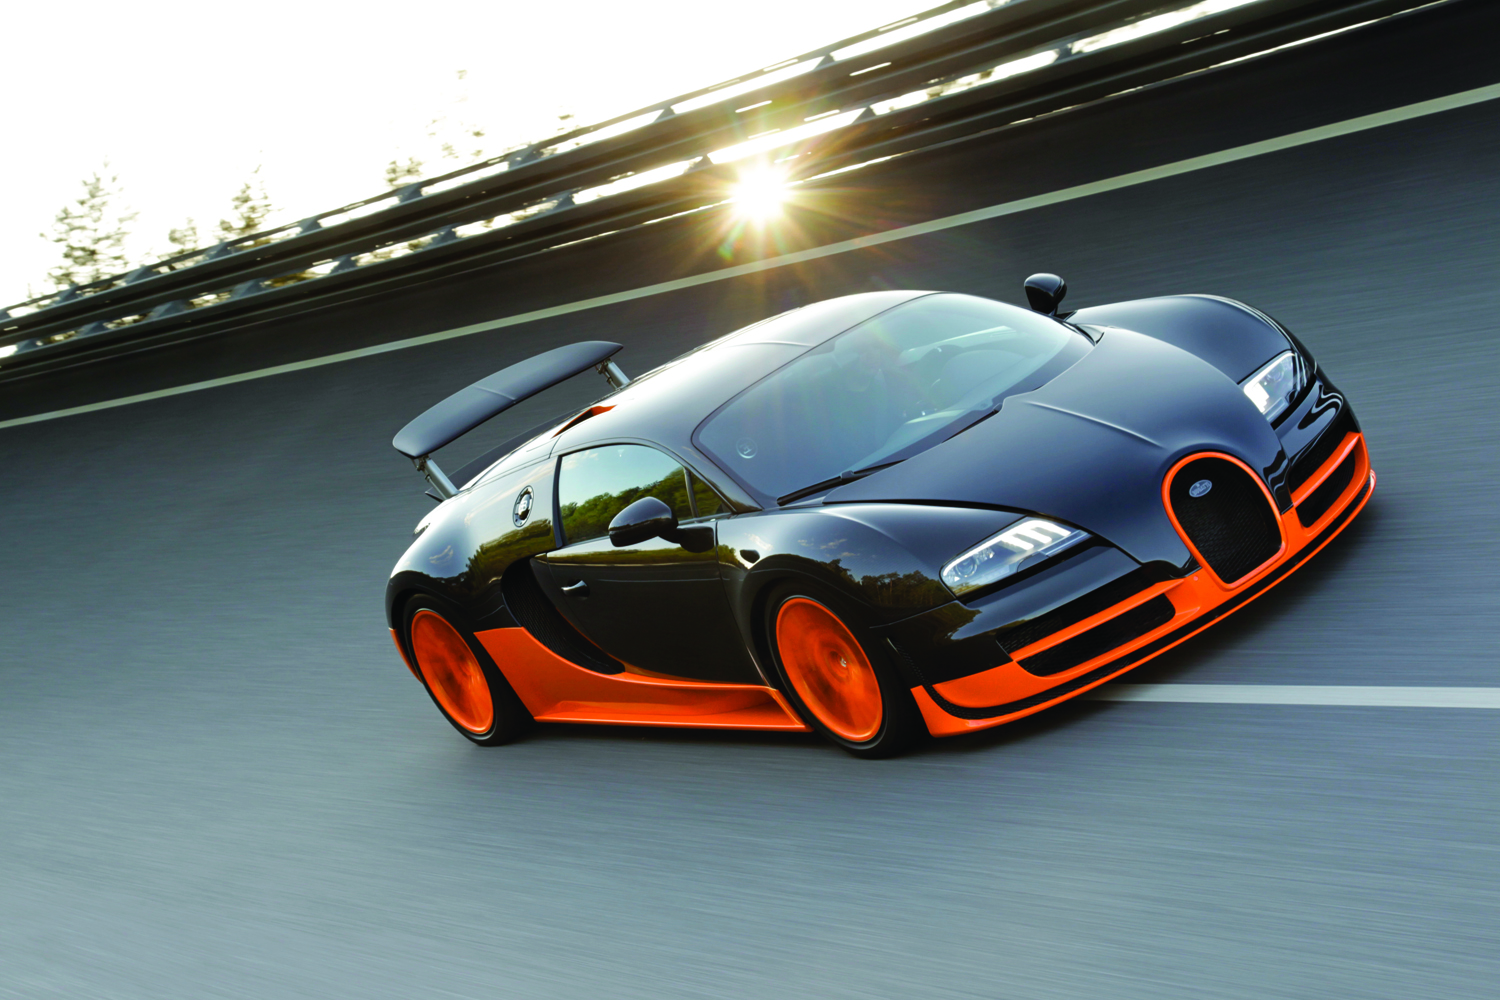 002_Bugatti_Veyron_16.4_Super_Sport_World_Record_Edition